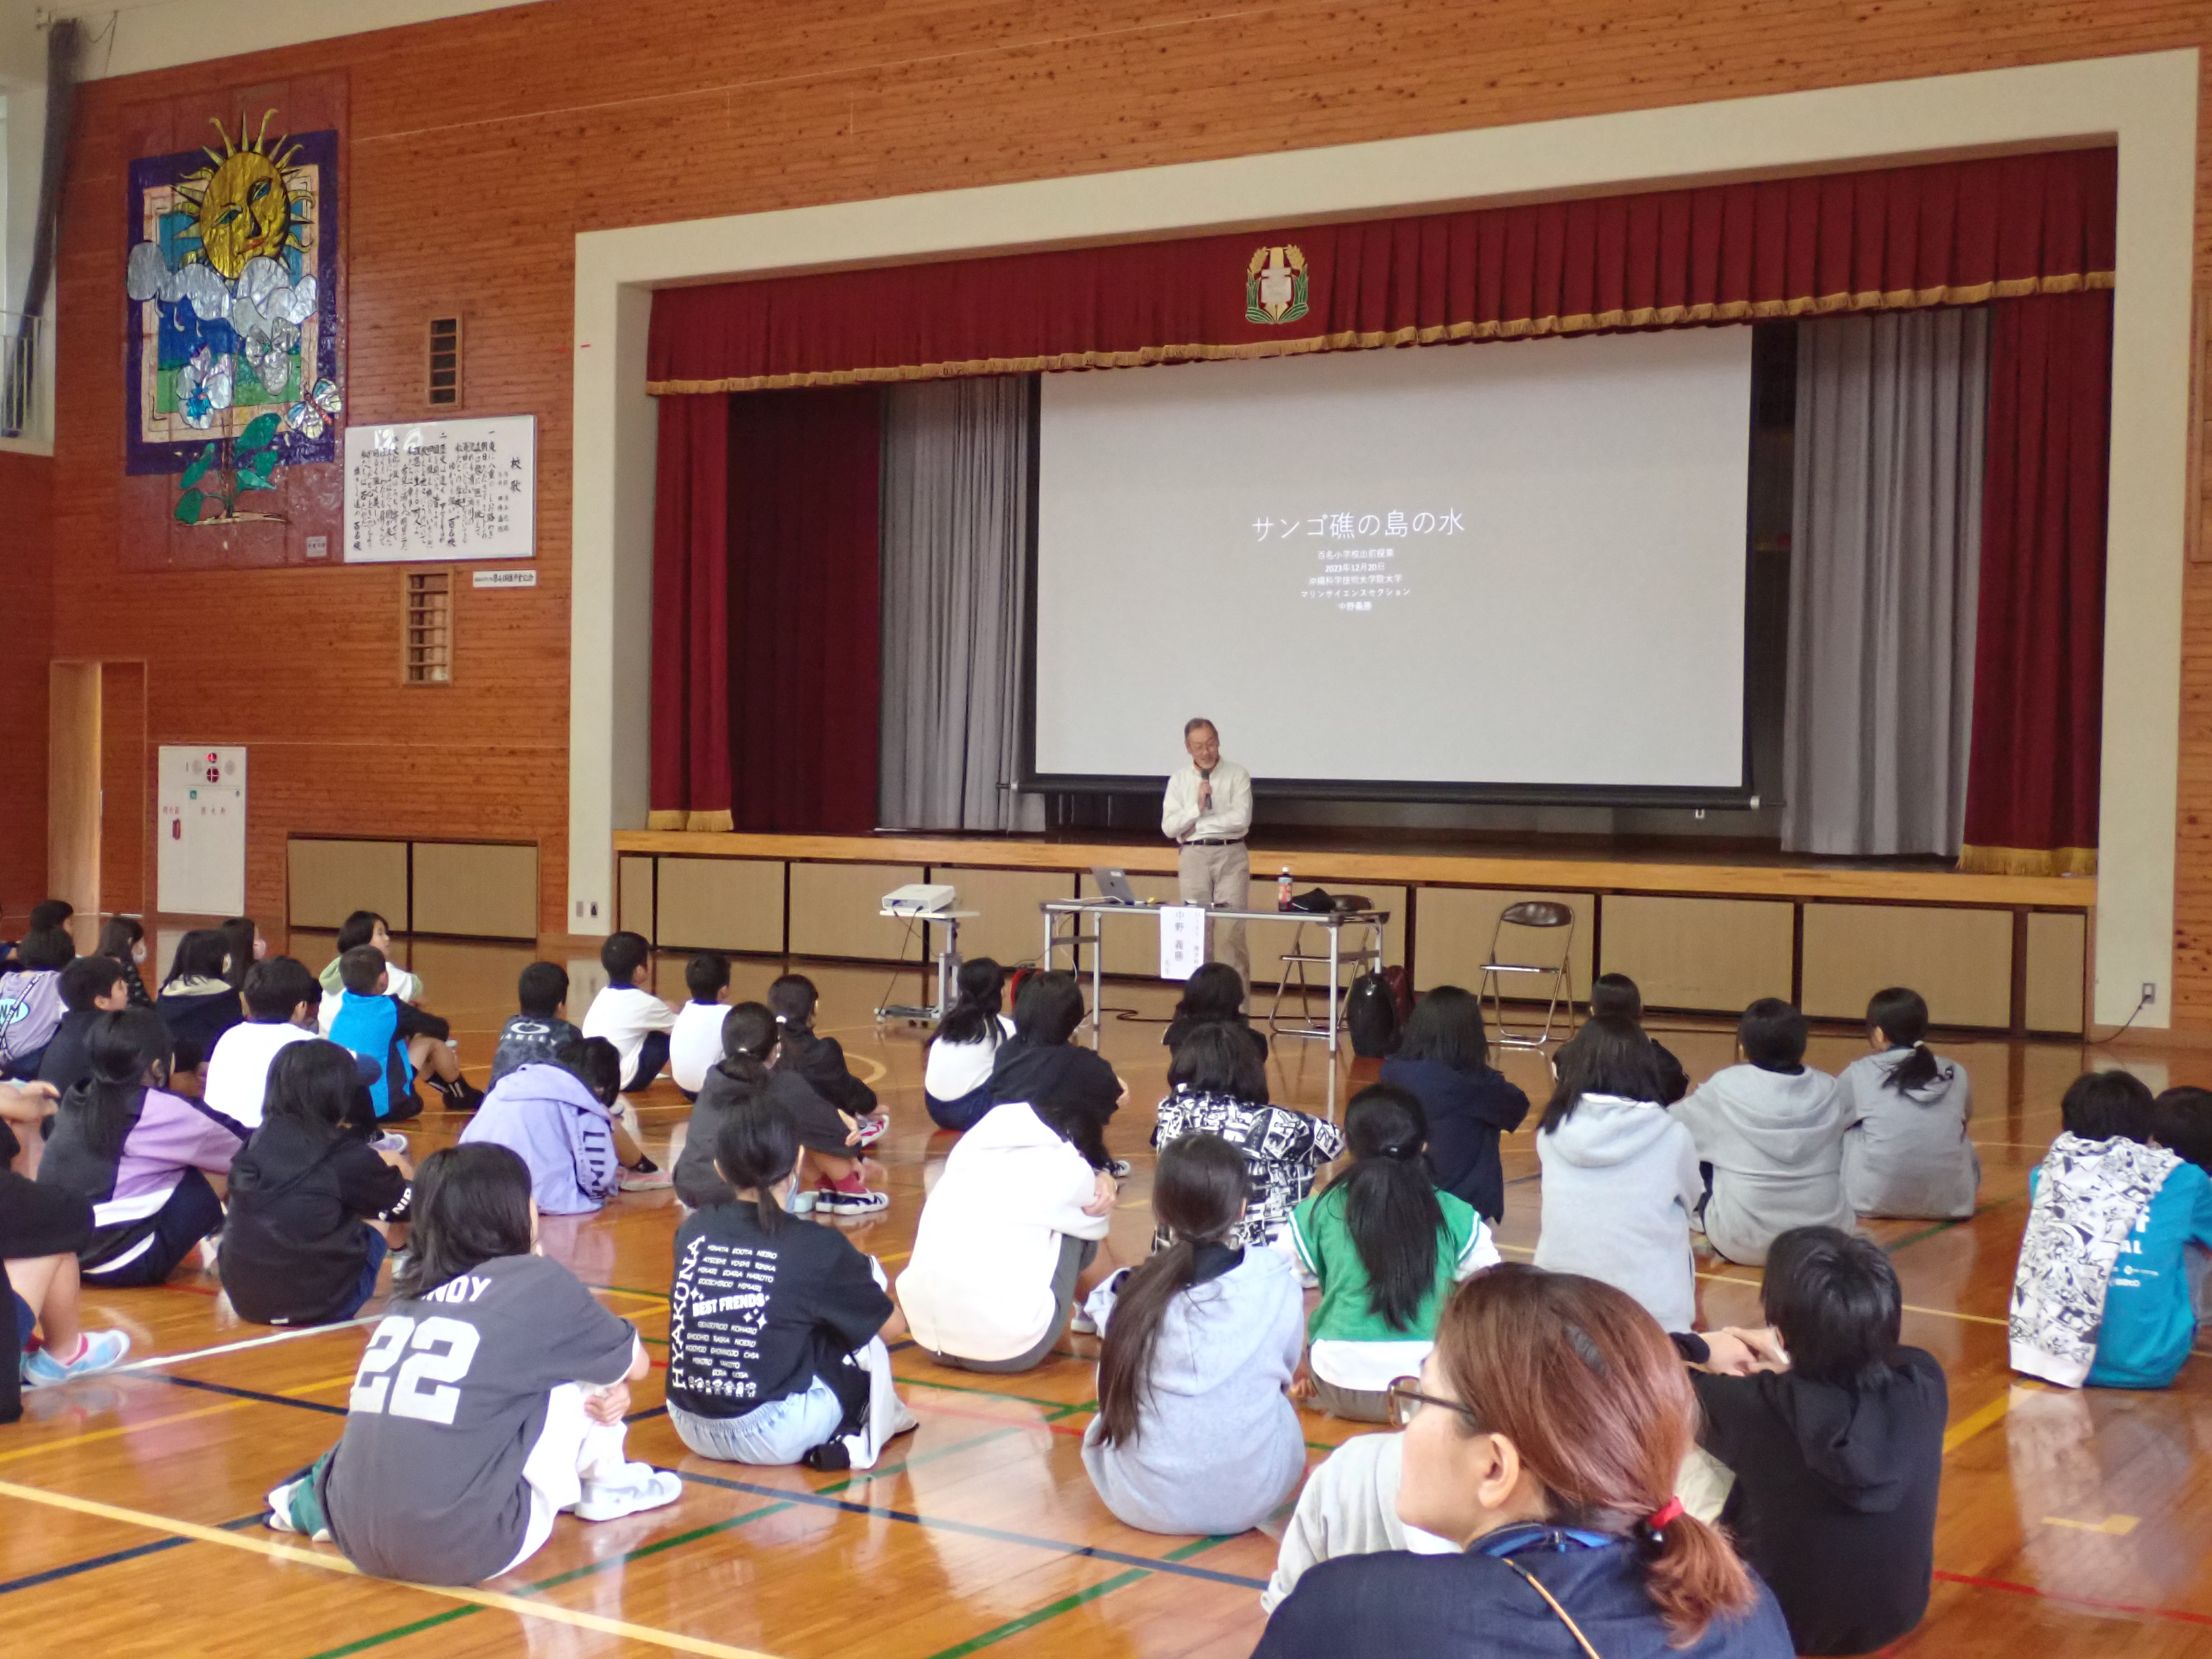 hyakuna elementary school